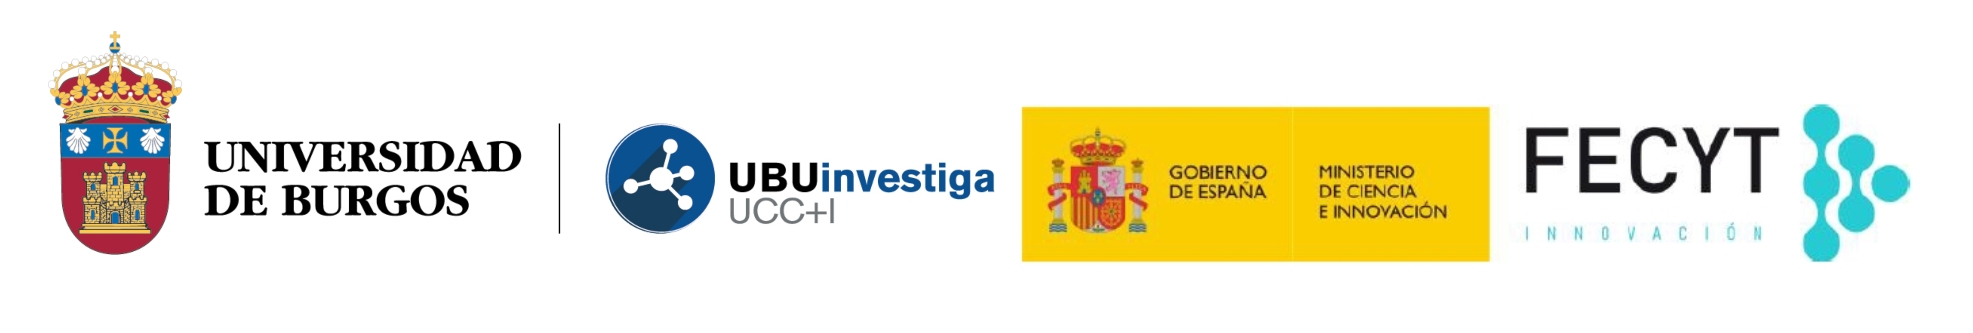 Universidad de Burgos. UBUinvestiga UCC+i. Gobierno de España. Ministerio de Ciencia e Innovación. FECYT Innovación